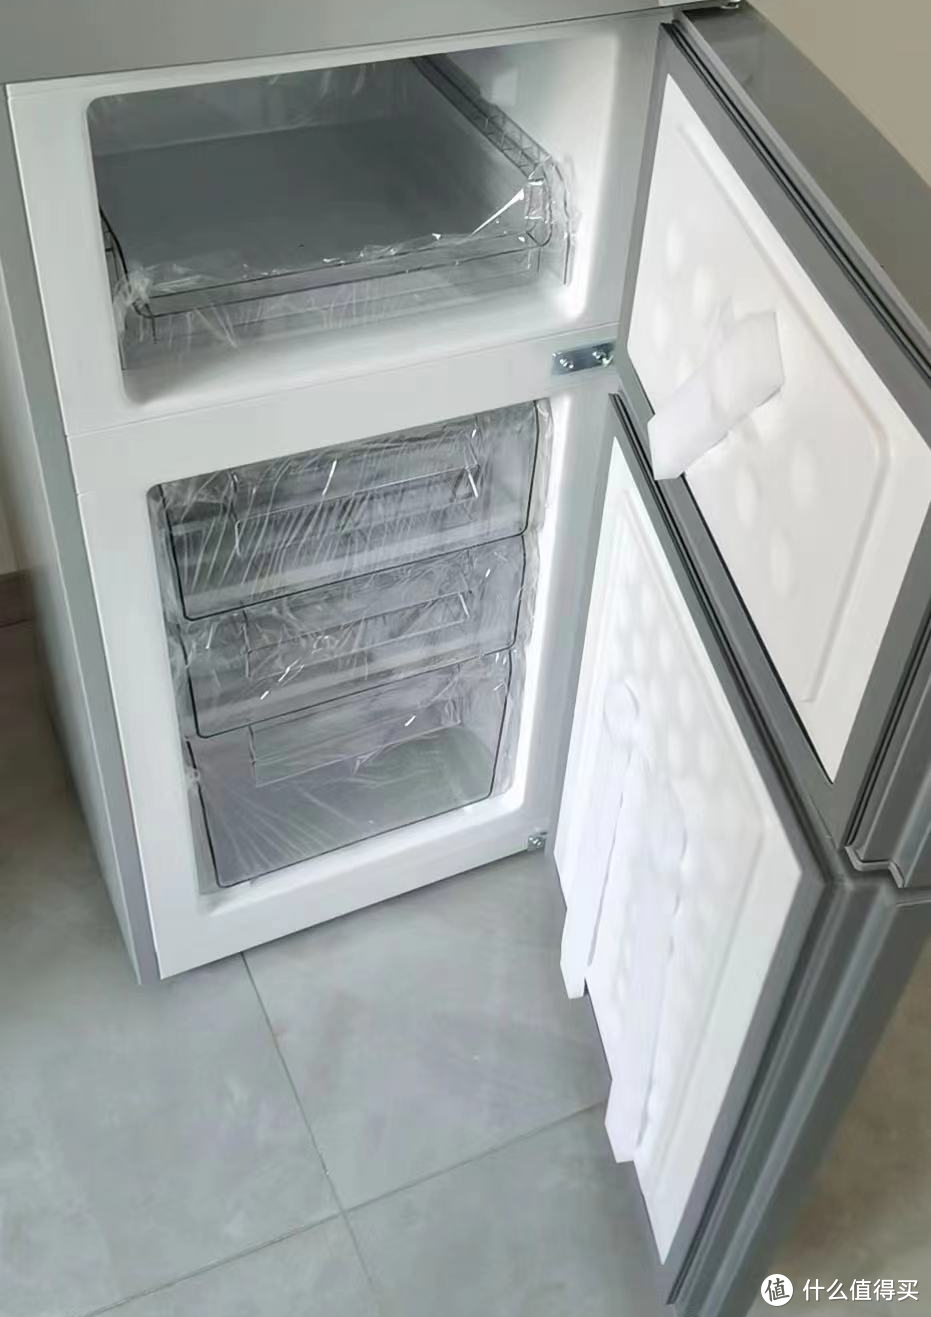 如果你也是小面积的出租房，可以考虑买个它---米家三门冰箱